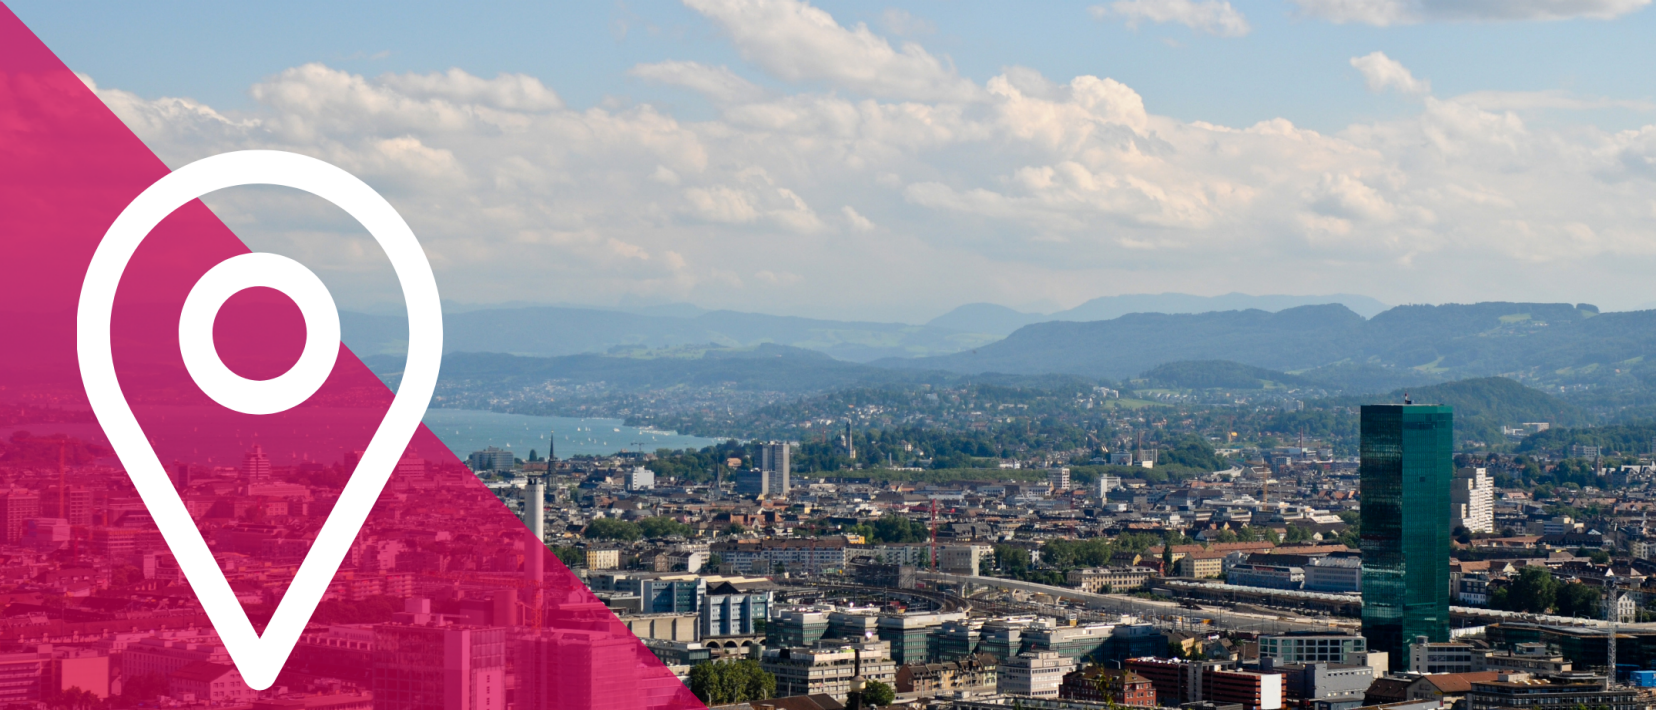 Blick auf die Stadt Zürich mit dem Prime Tower im Vordergrund und dem Zürichsee im Hintergrund